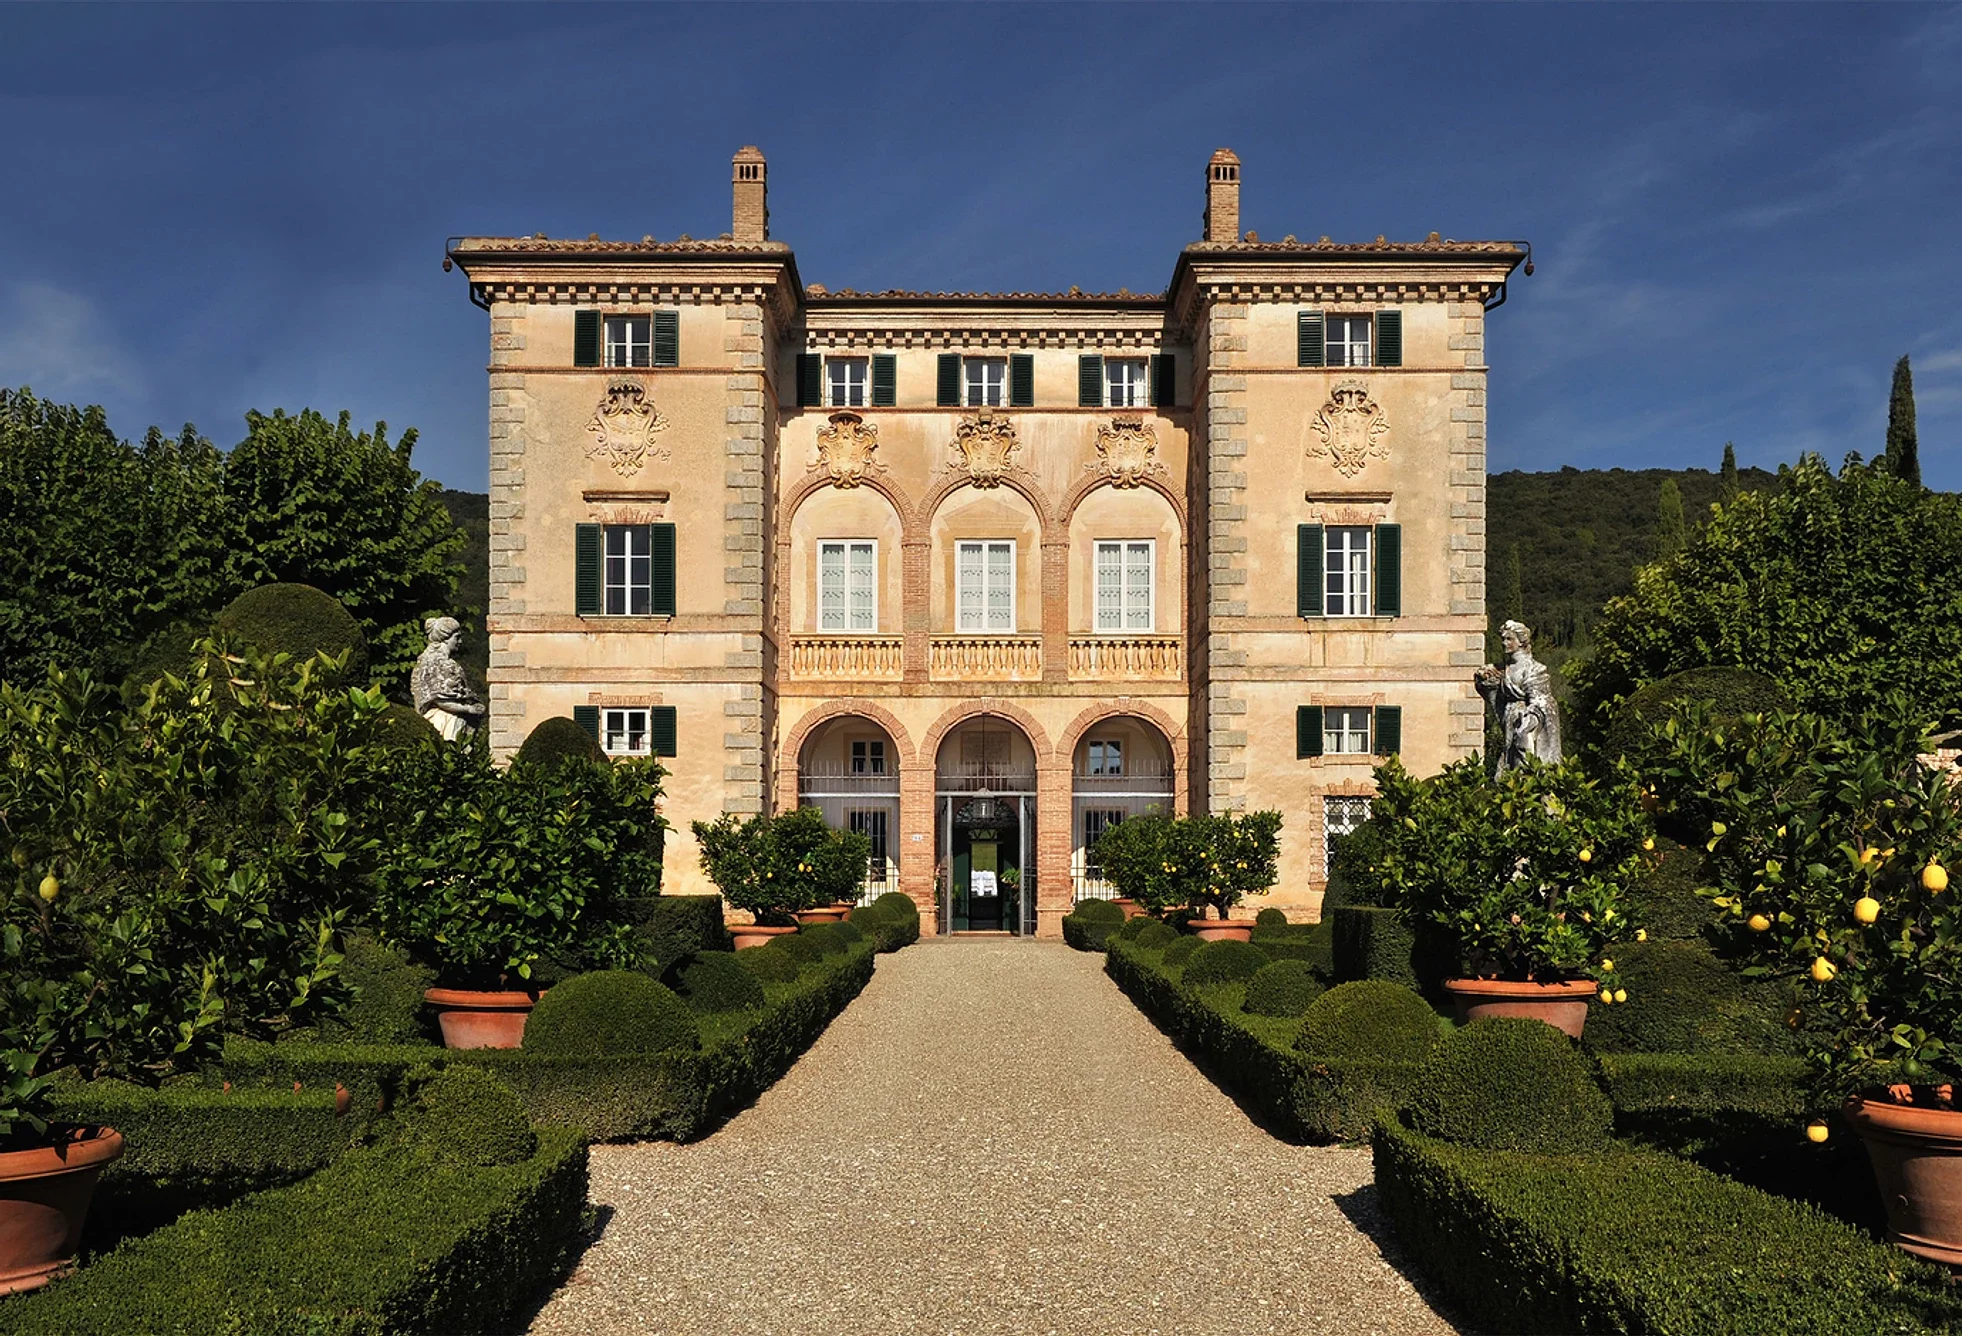 Villa Cetinale en Toscana tiene un papel protagónico en la tercera temporada